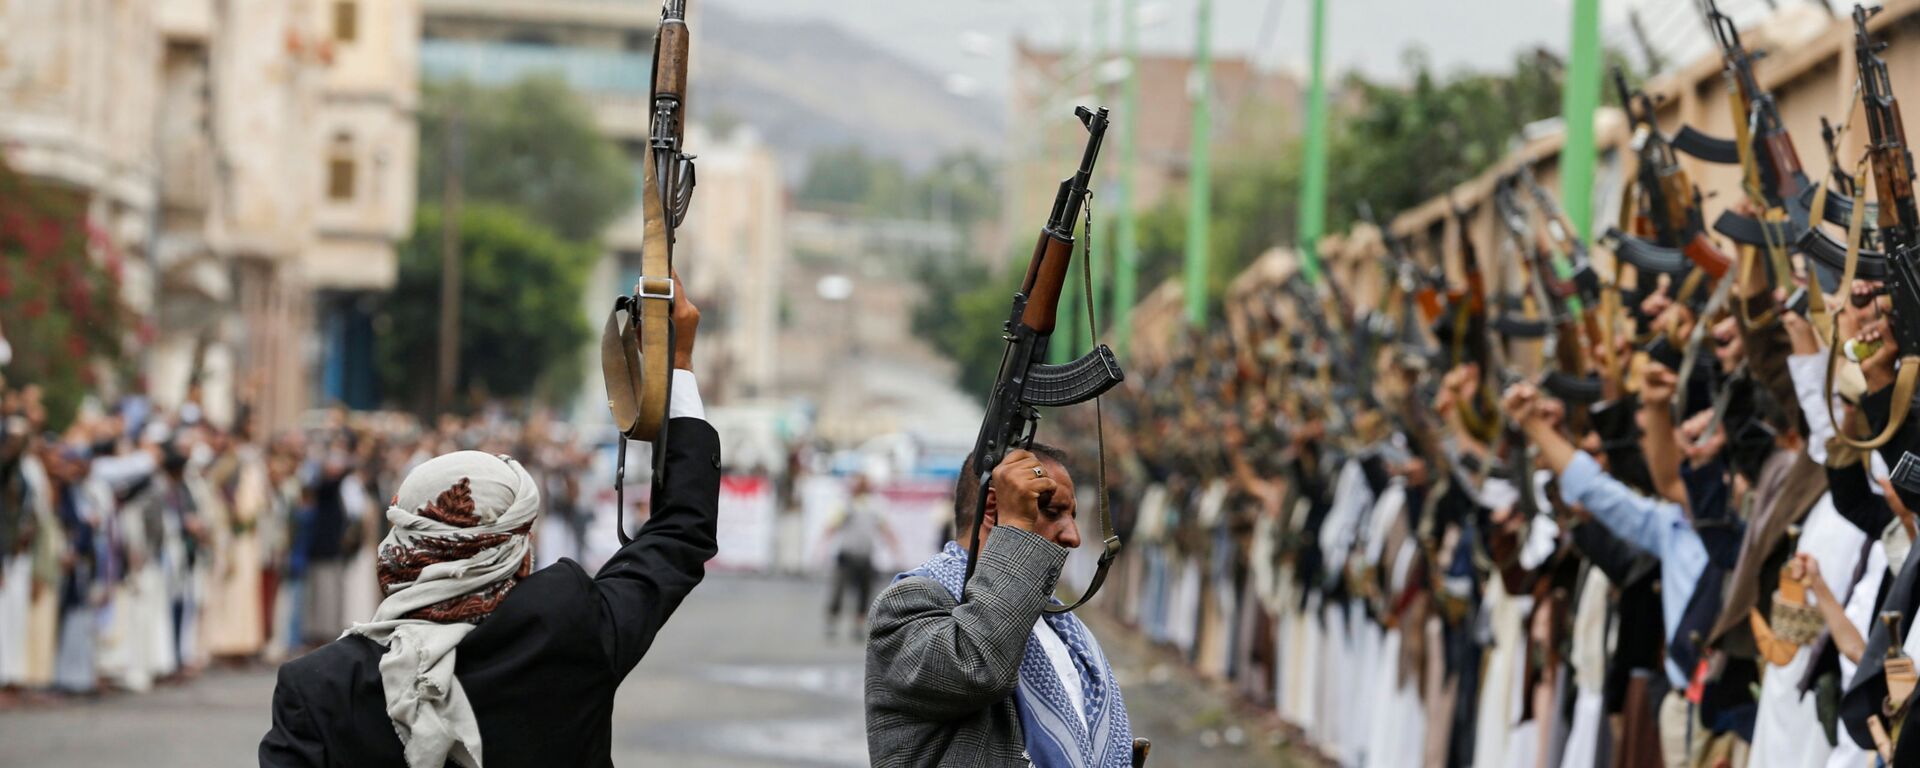 جماعة أنصار الله، الحوثيون، اليمن يو6 ليو 2020 - سبوتنيك عربي, 1920, 26.04.2021